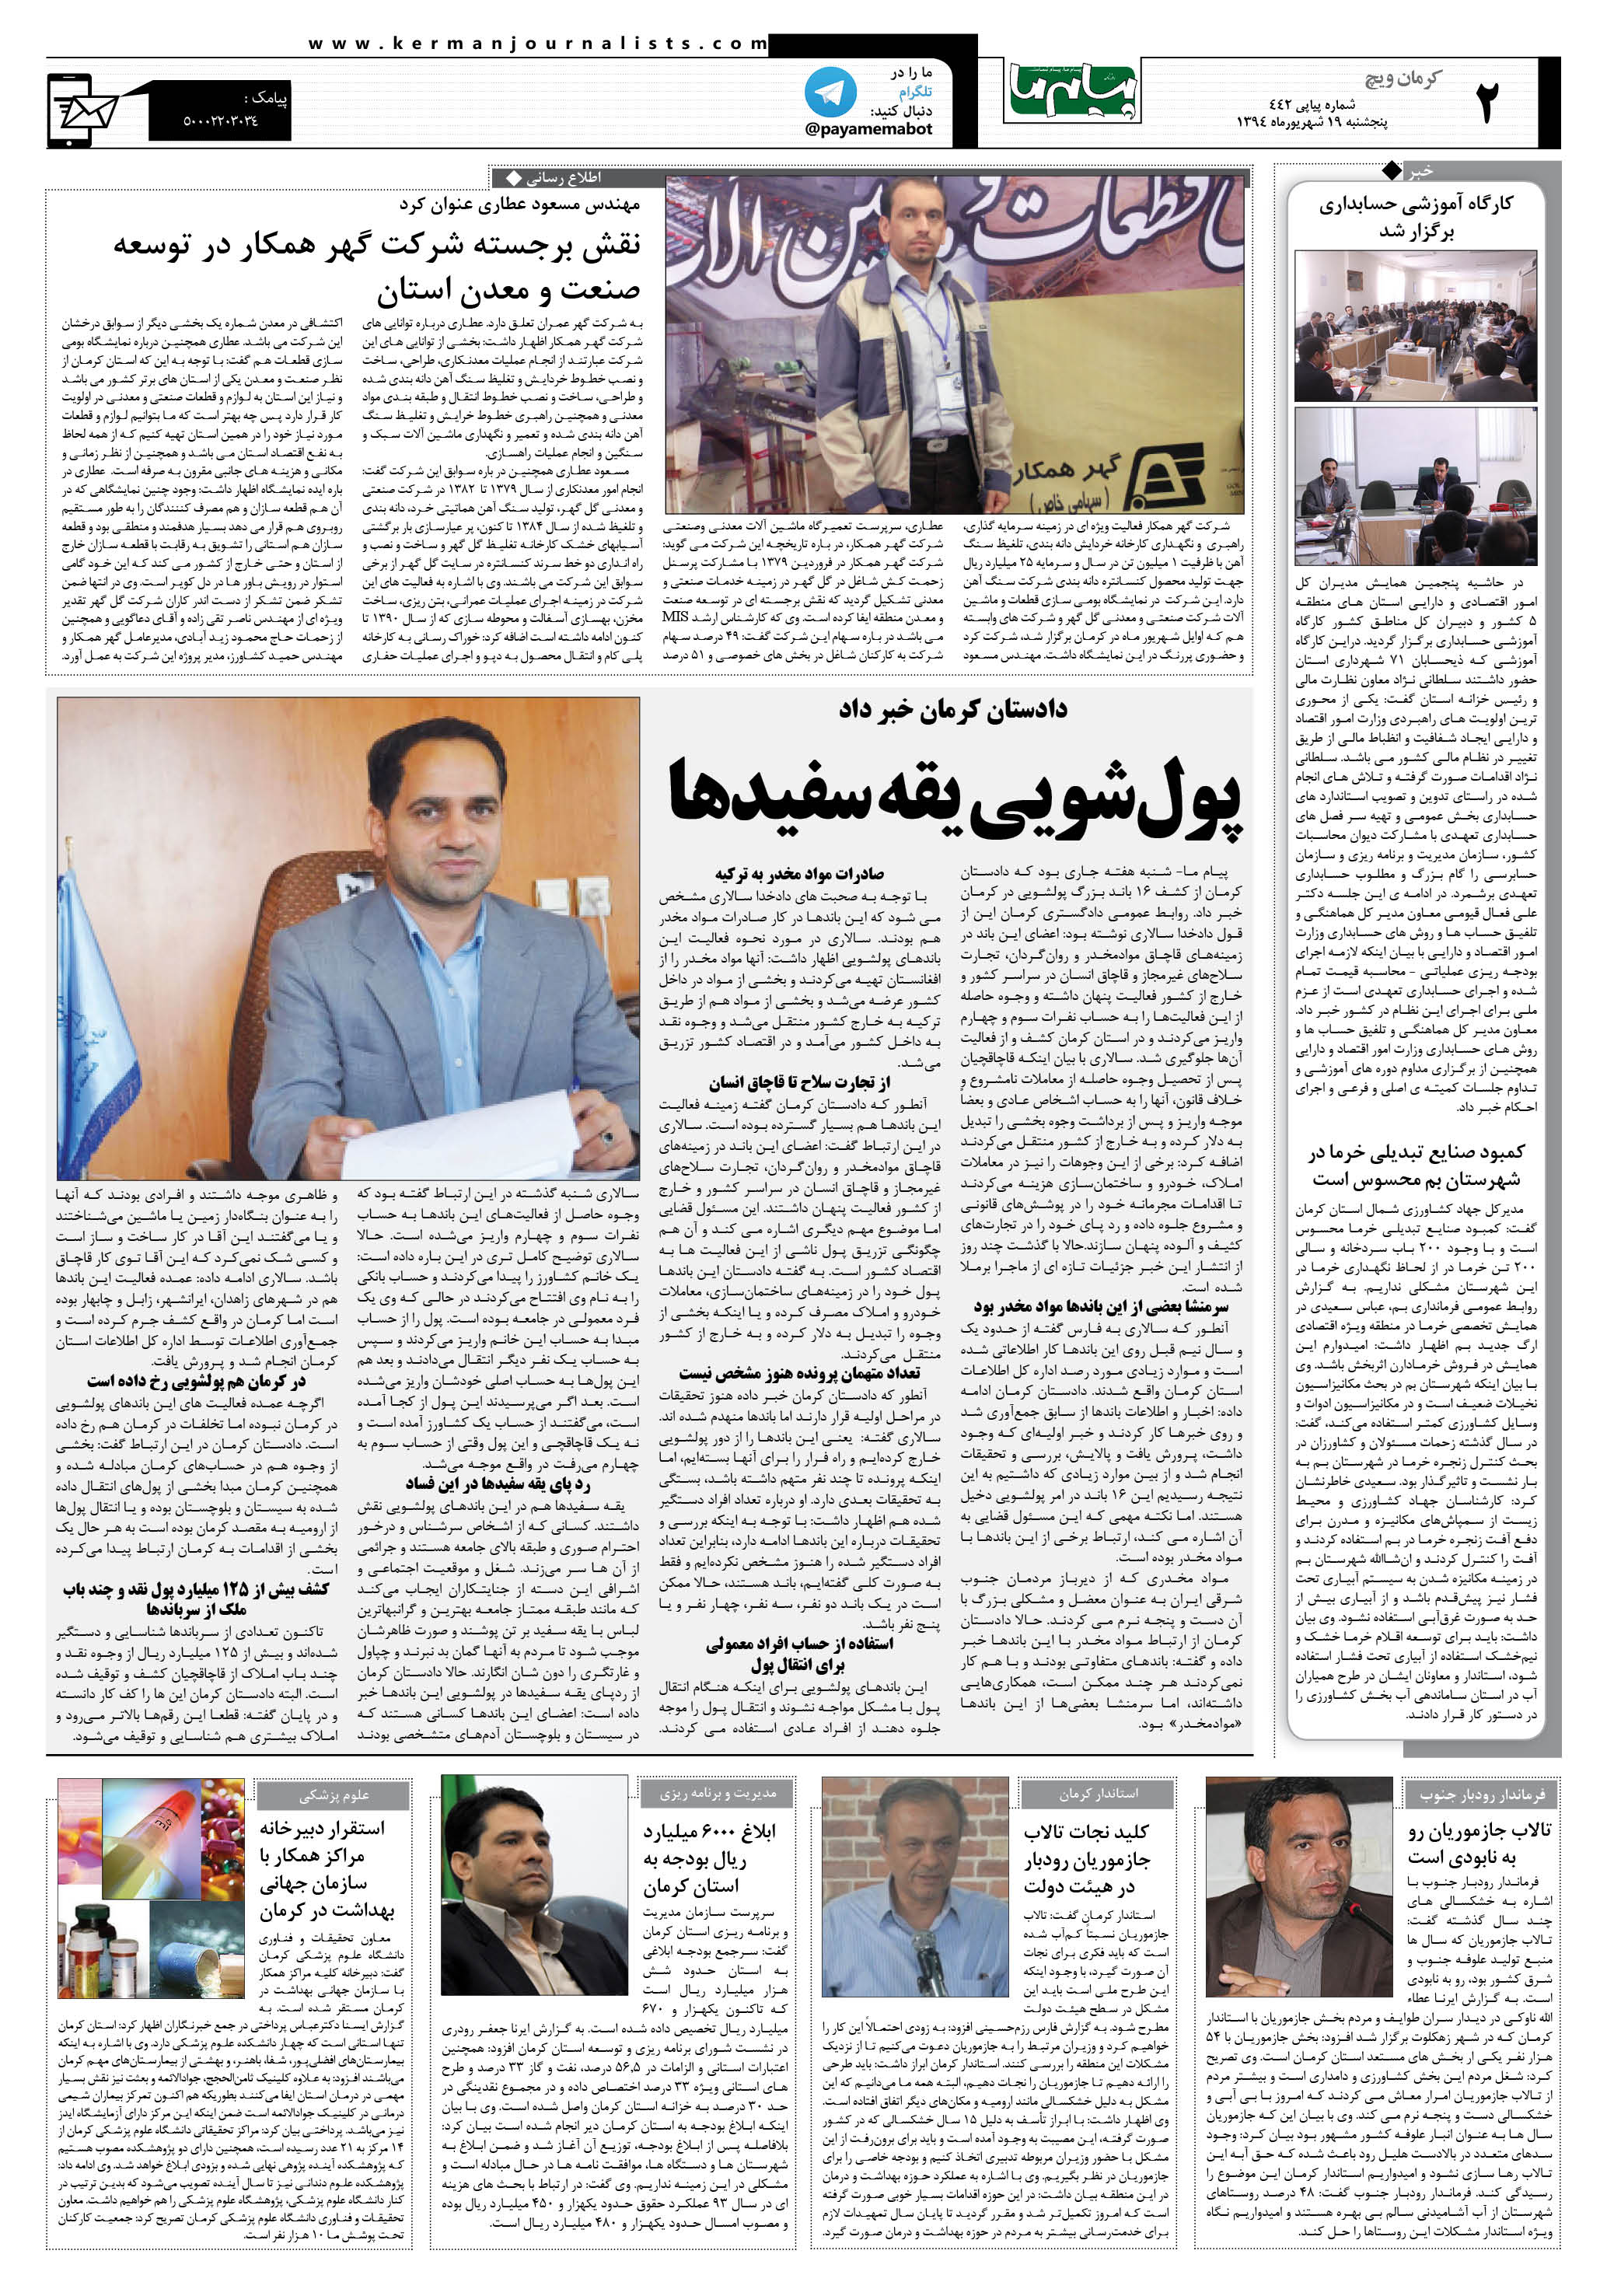 صفحه کرمان ویچ شماره 442 روزنامه پیام ما